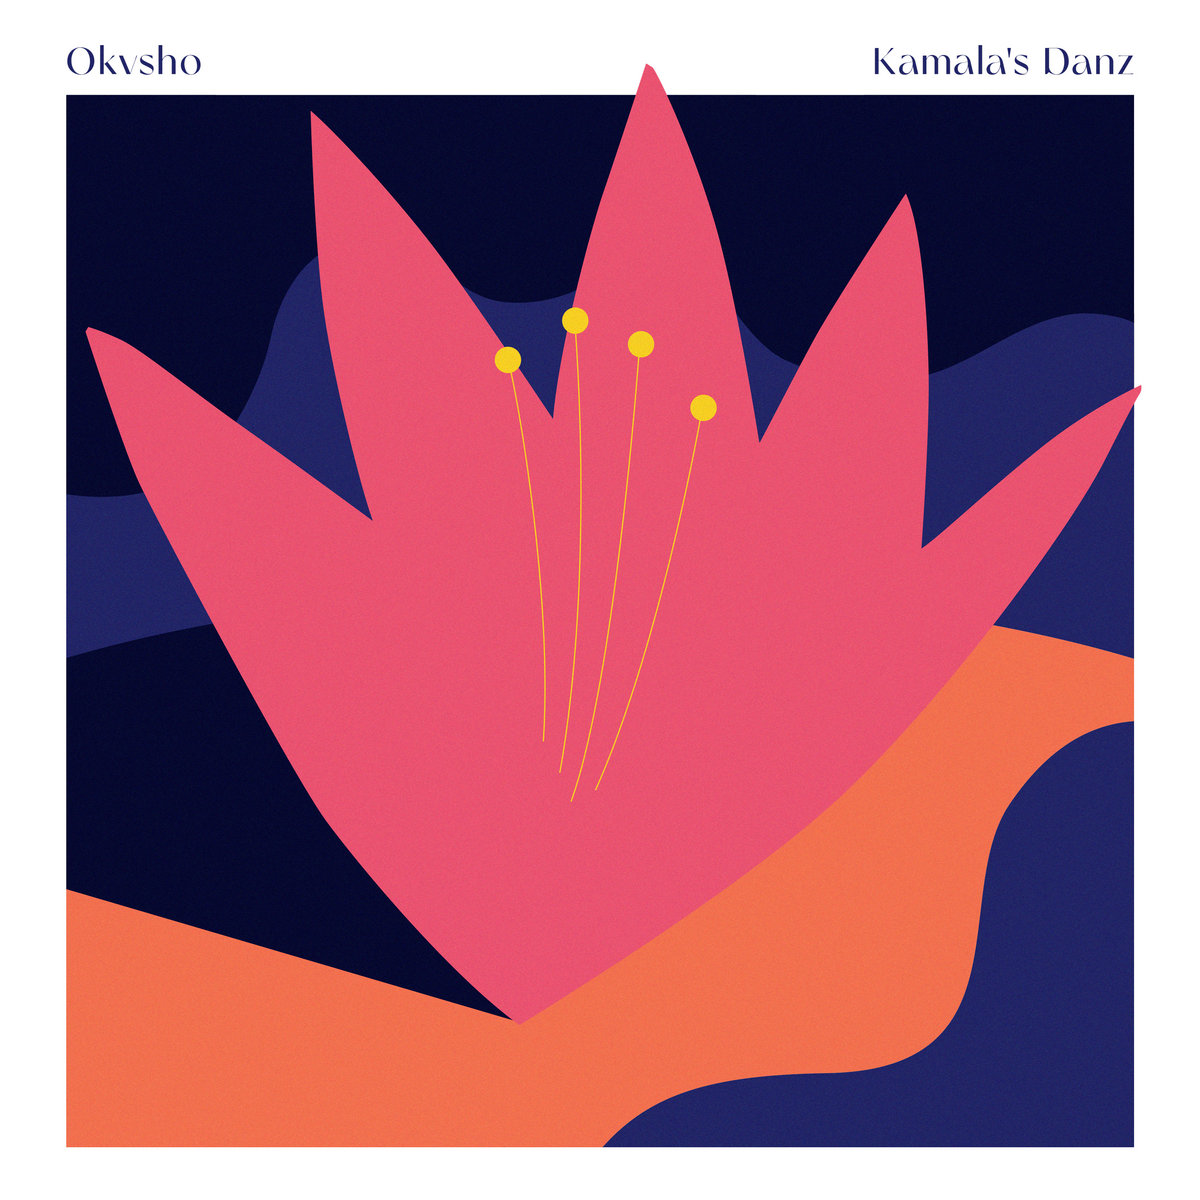 Okvsho deliver jazzy new album "Kamala's Danz"